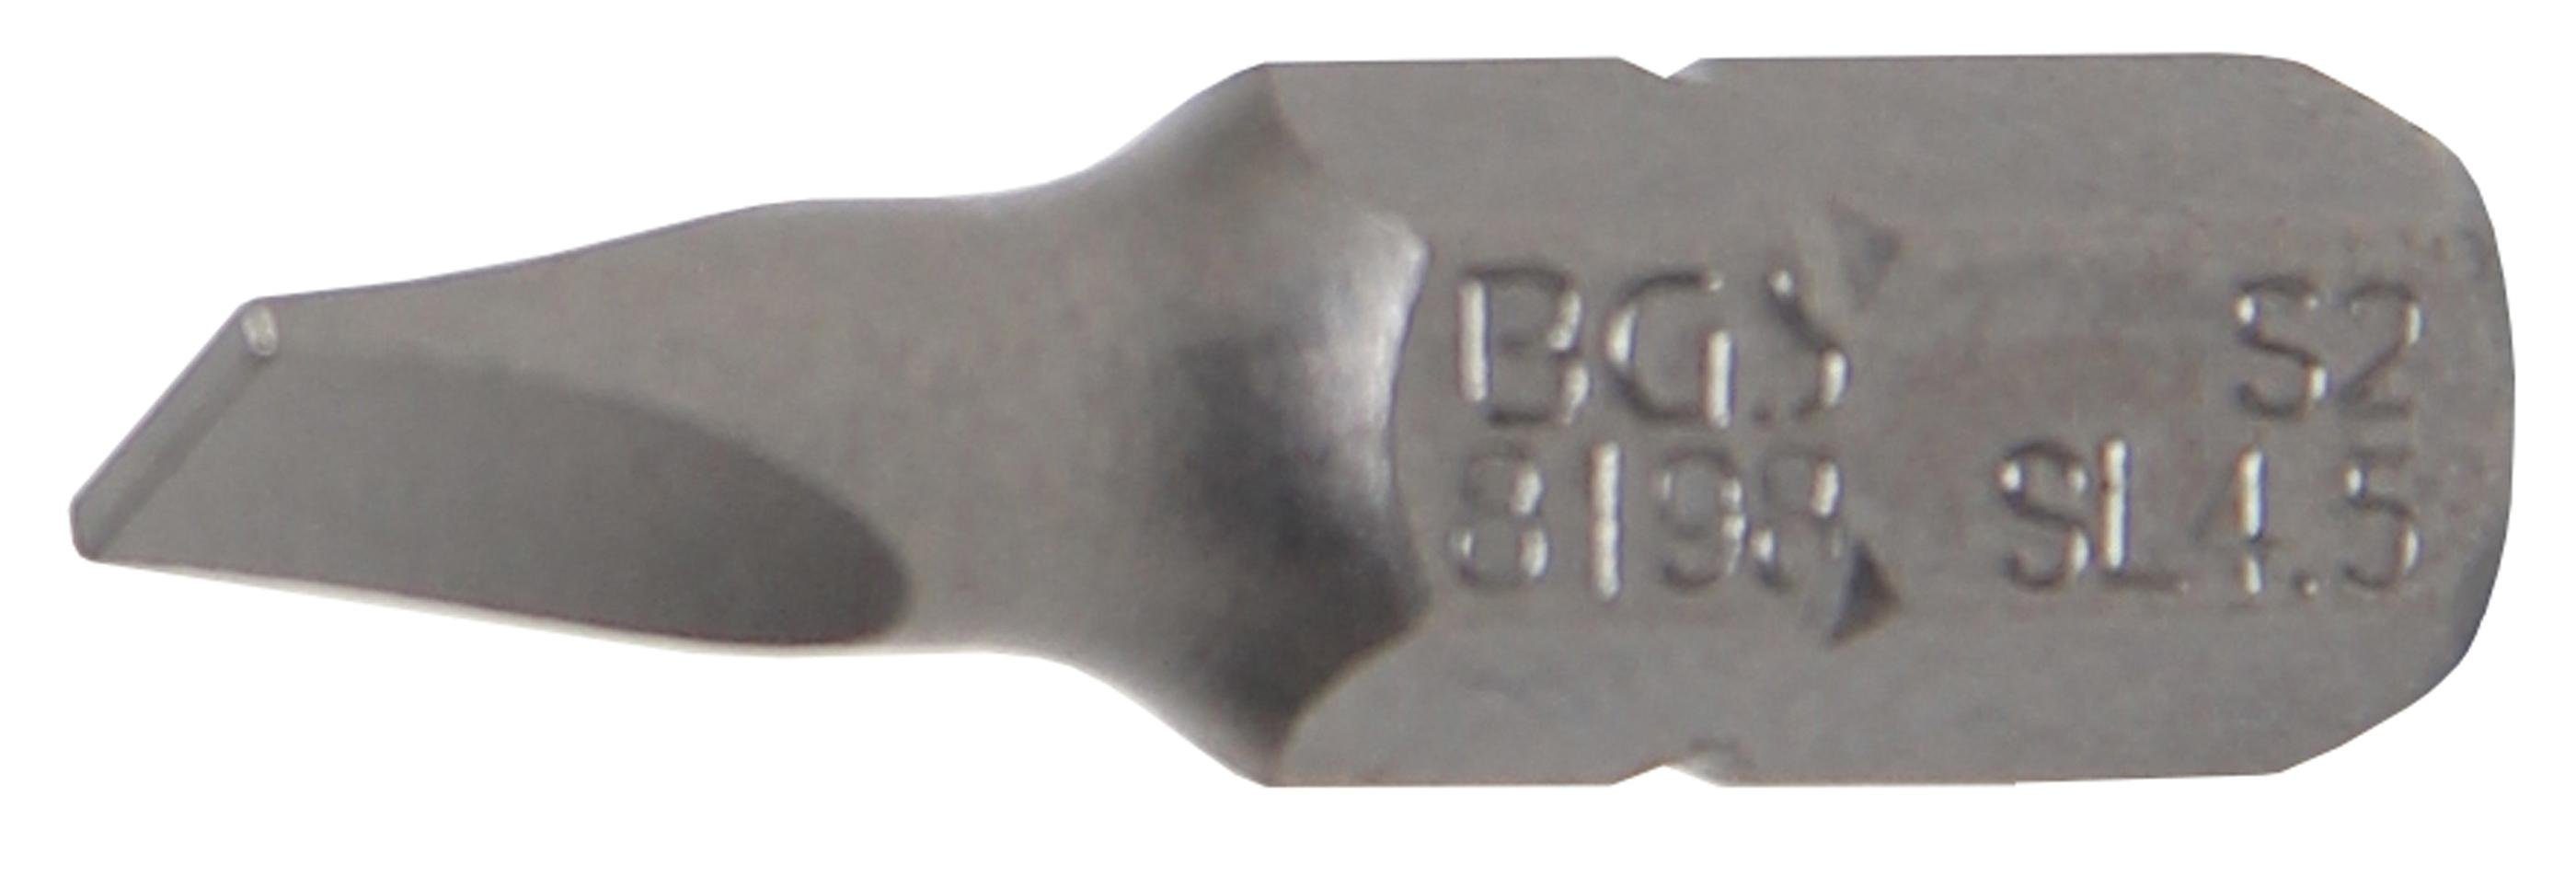 mm Bit-Schraubendreher Bit, Antrieb Außensechskant mm (1/4), Schlitz 4,5 technic 6,3 BGS